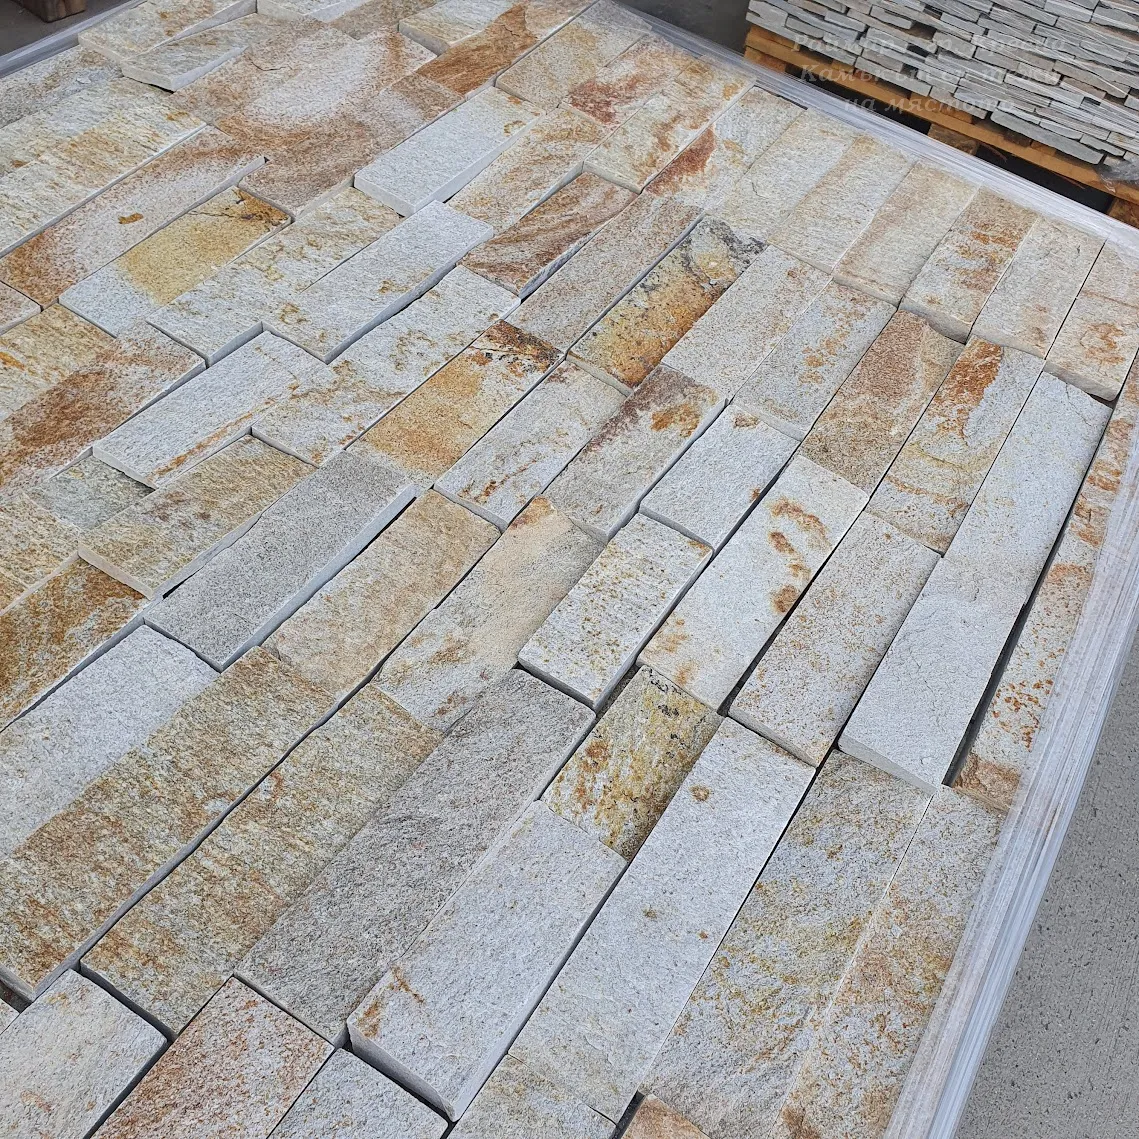 Sandy-gold gneiss machine-cut tiles 5